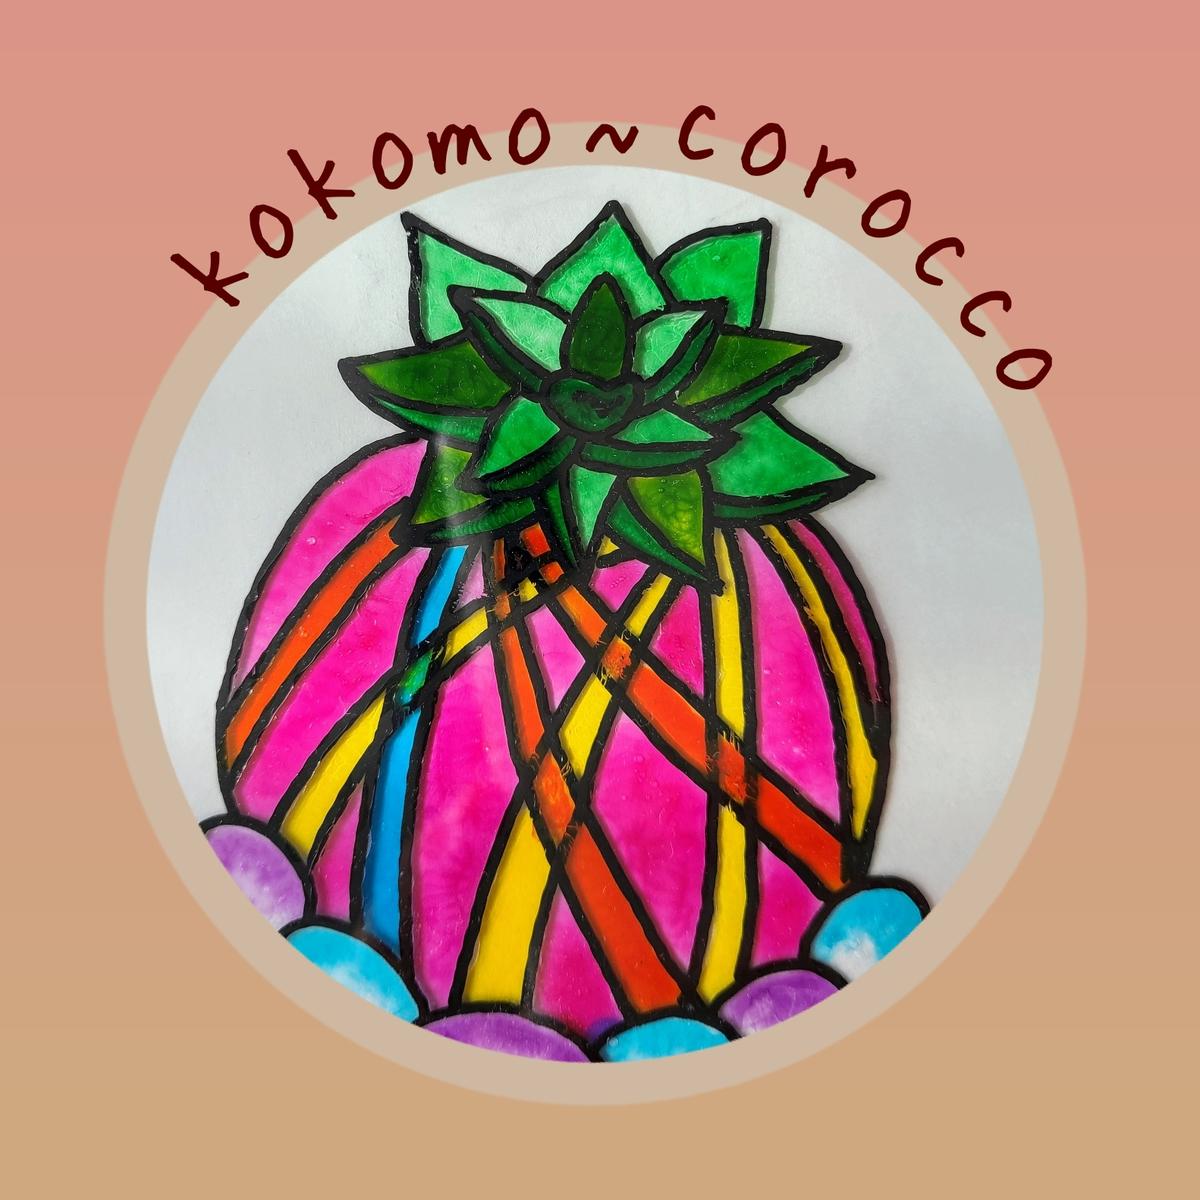 kokomo-corocco